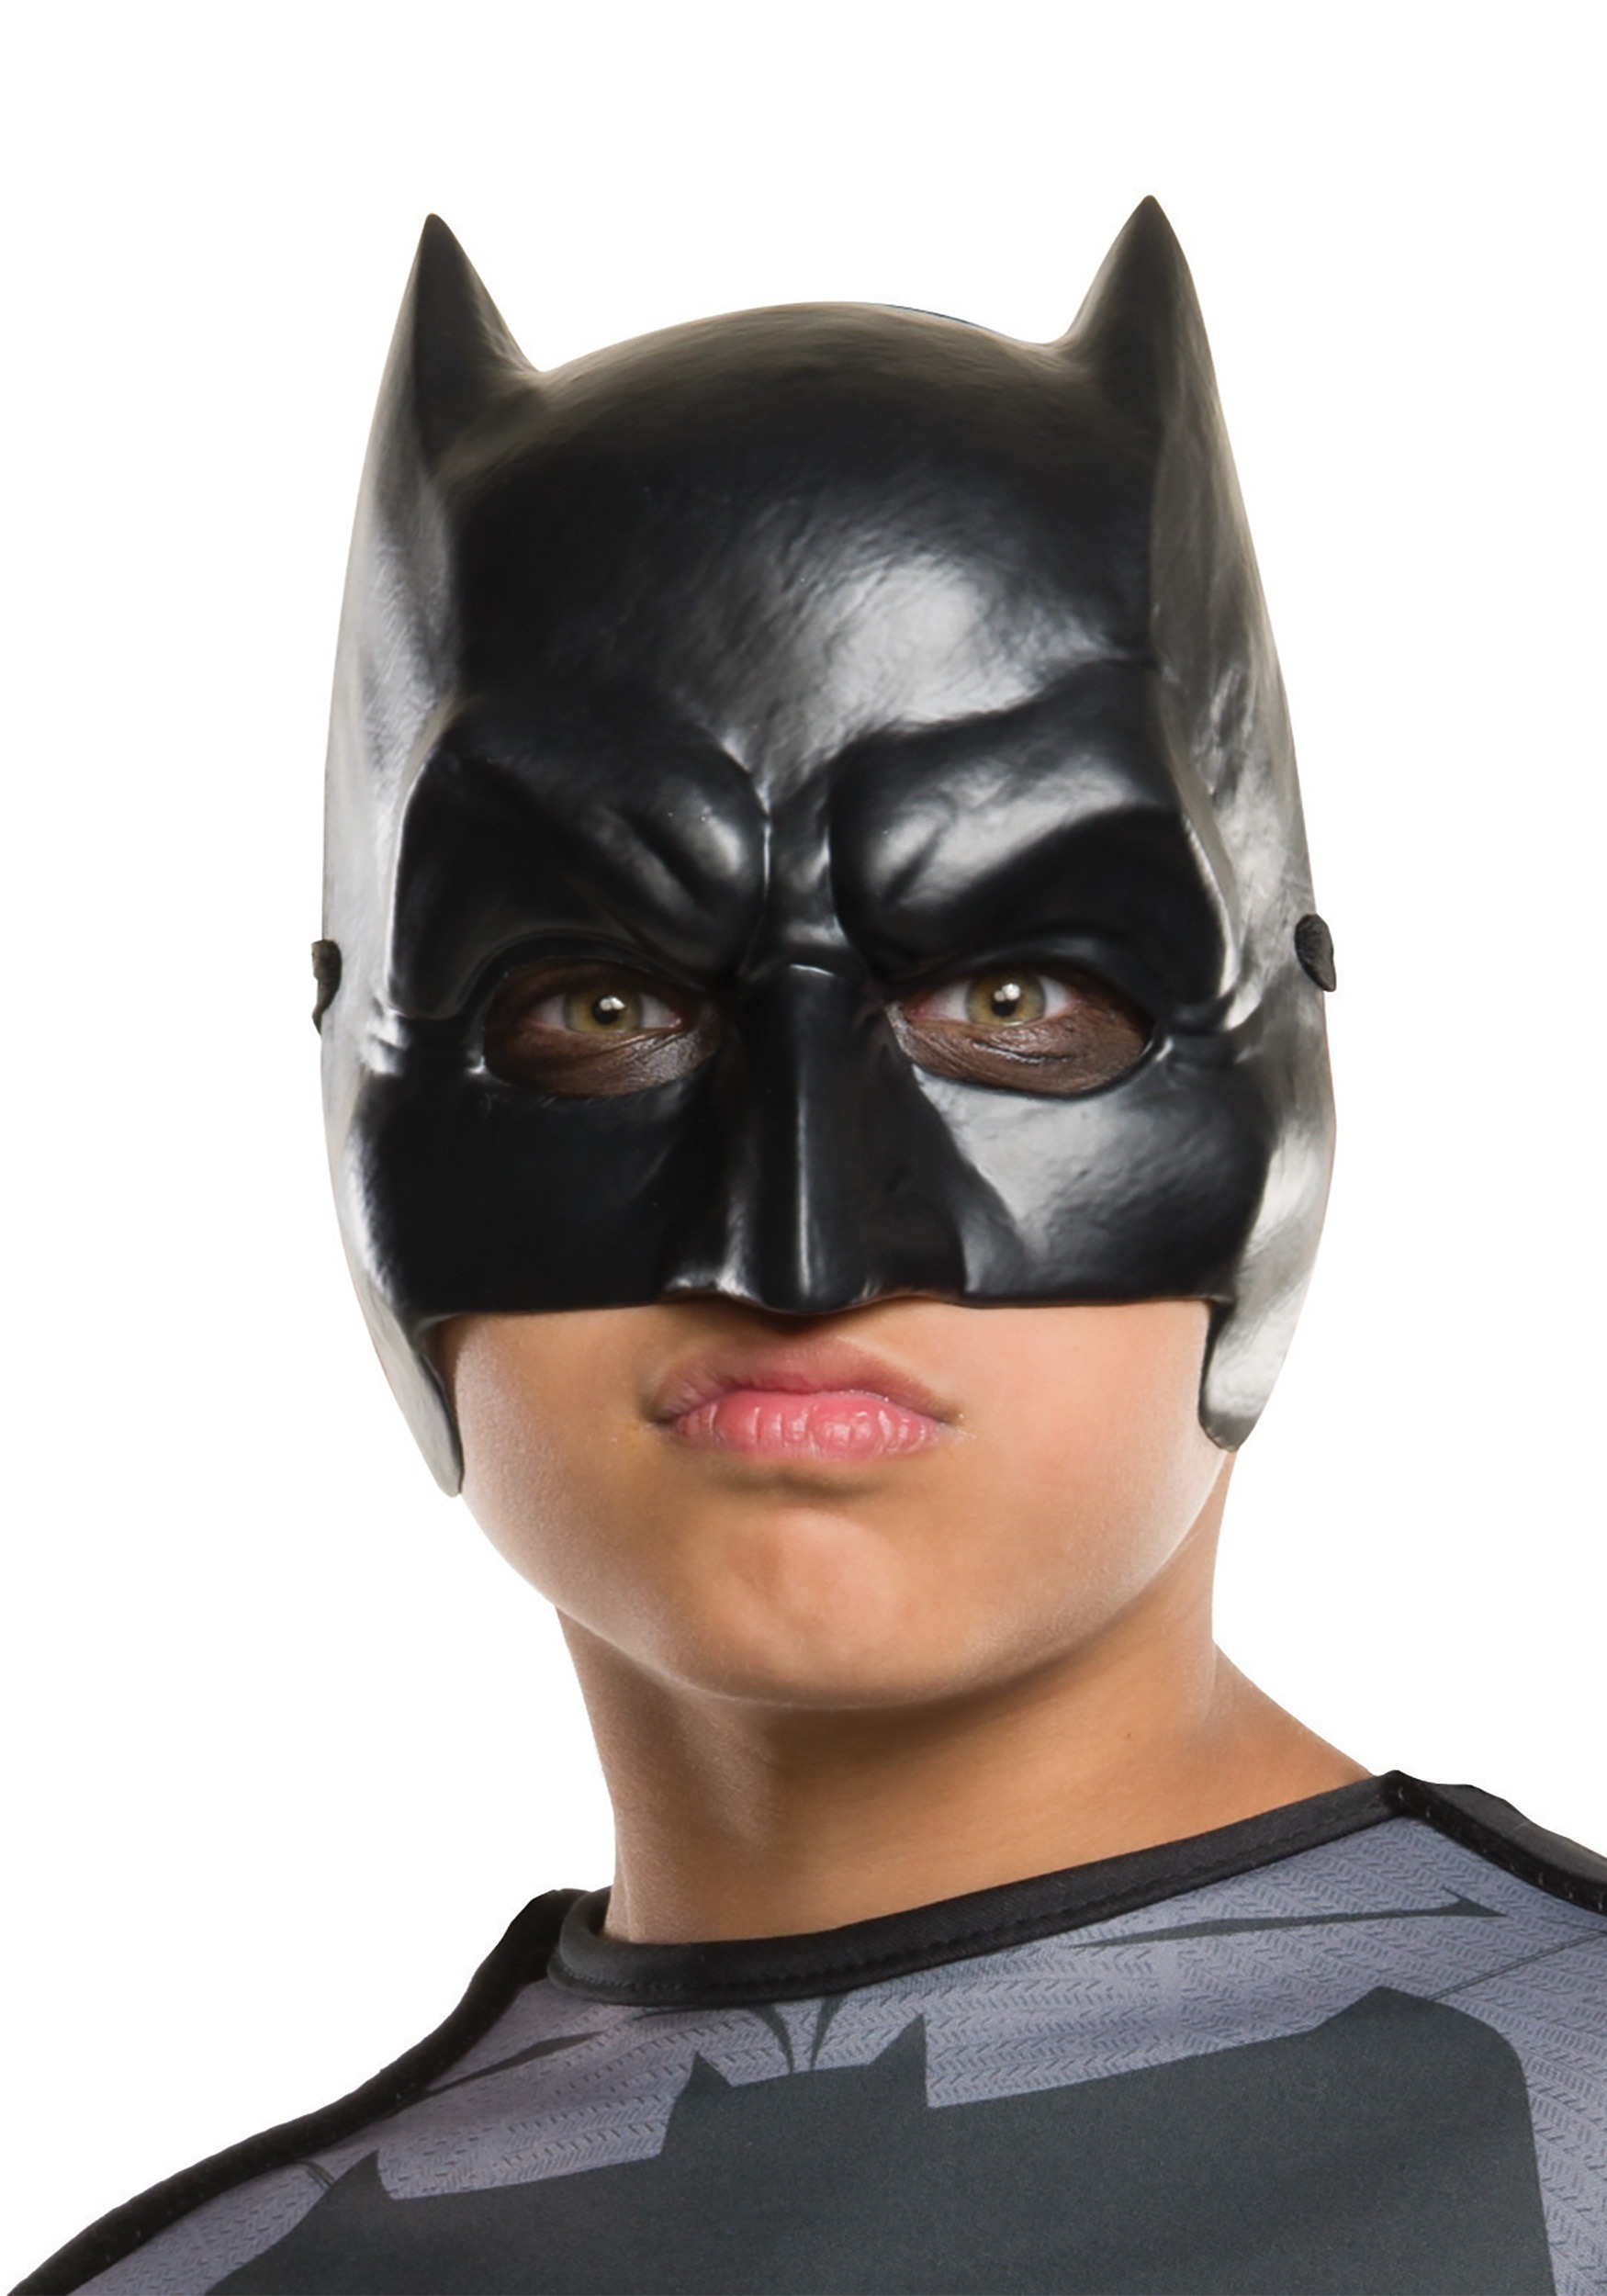 Best 25 Batman mask ideas on Pinterest Batman mask